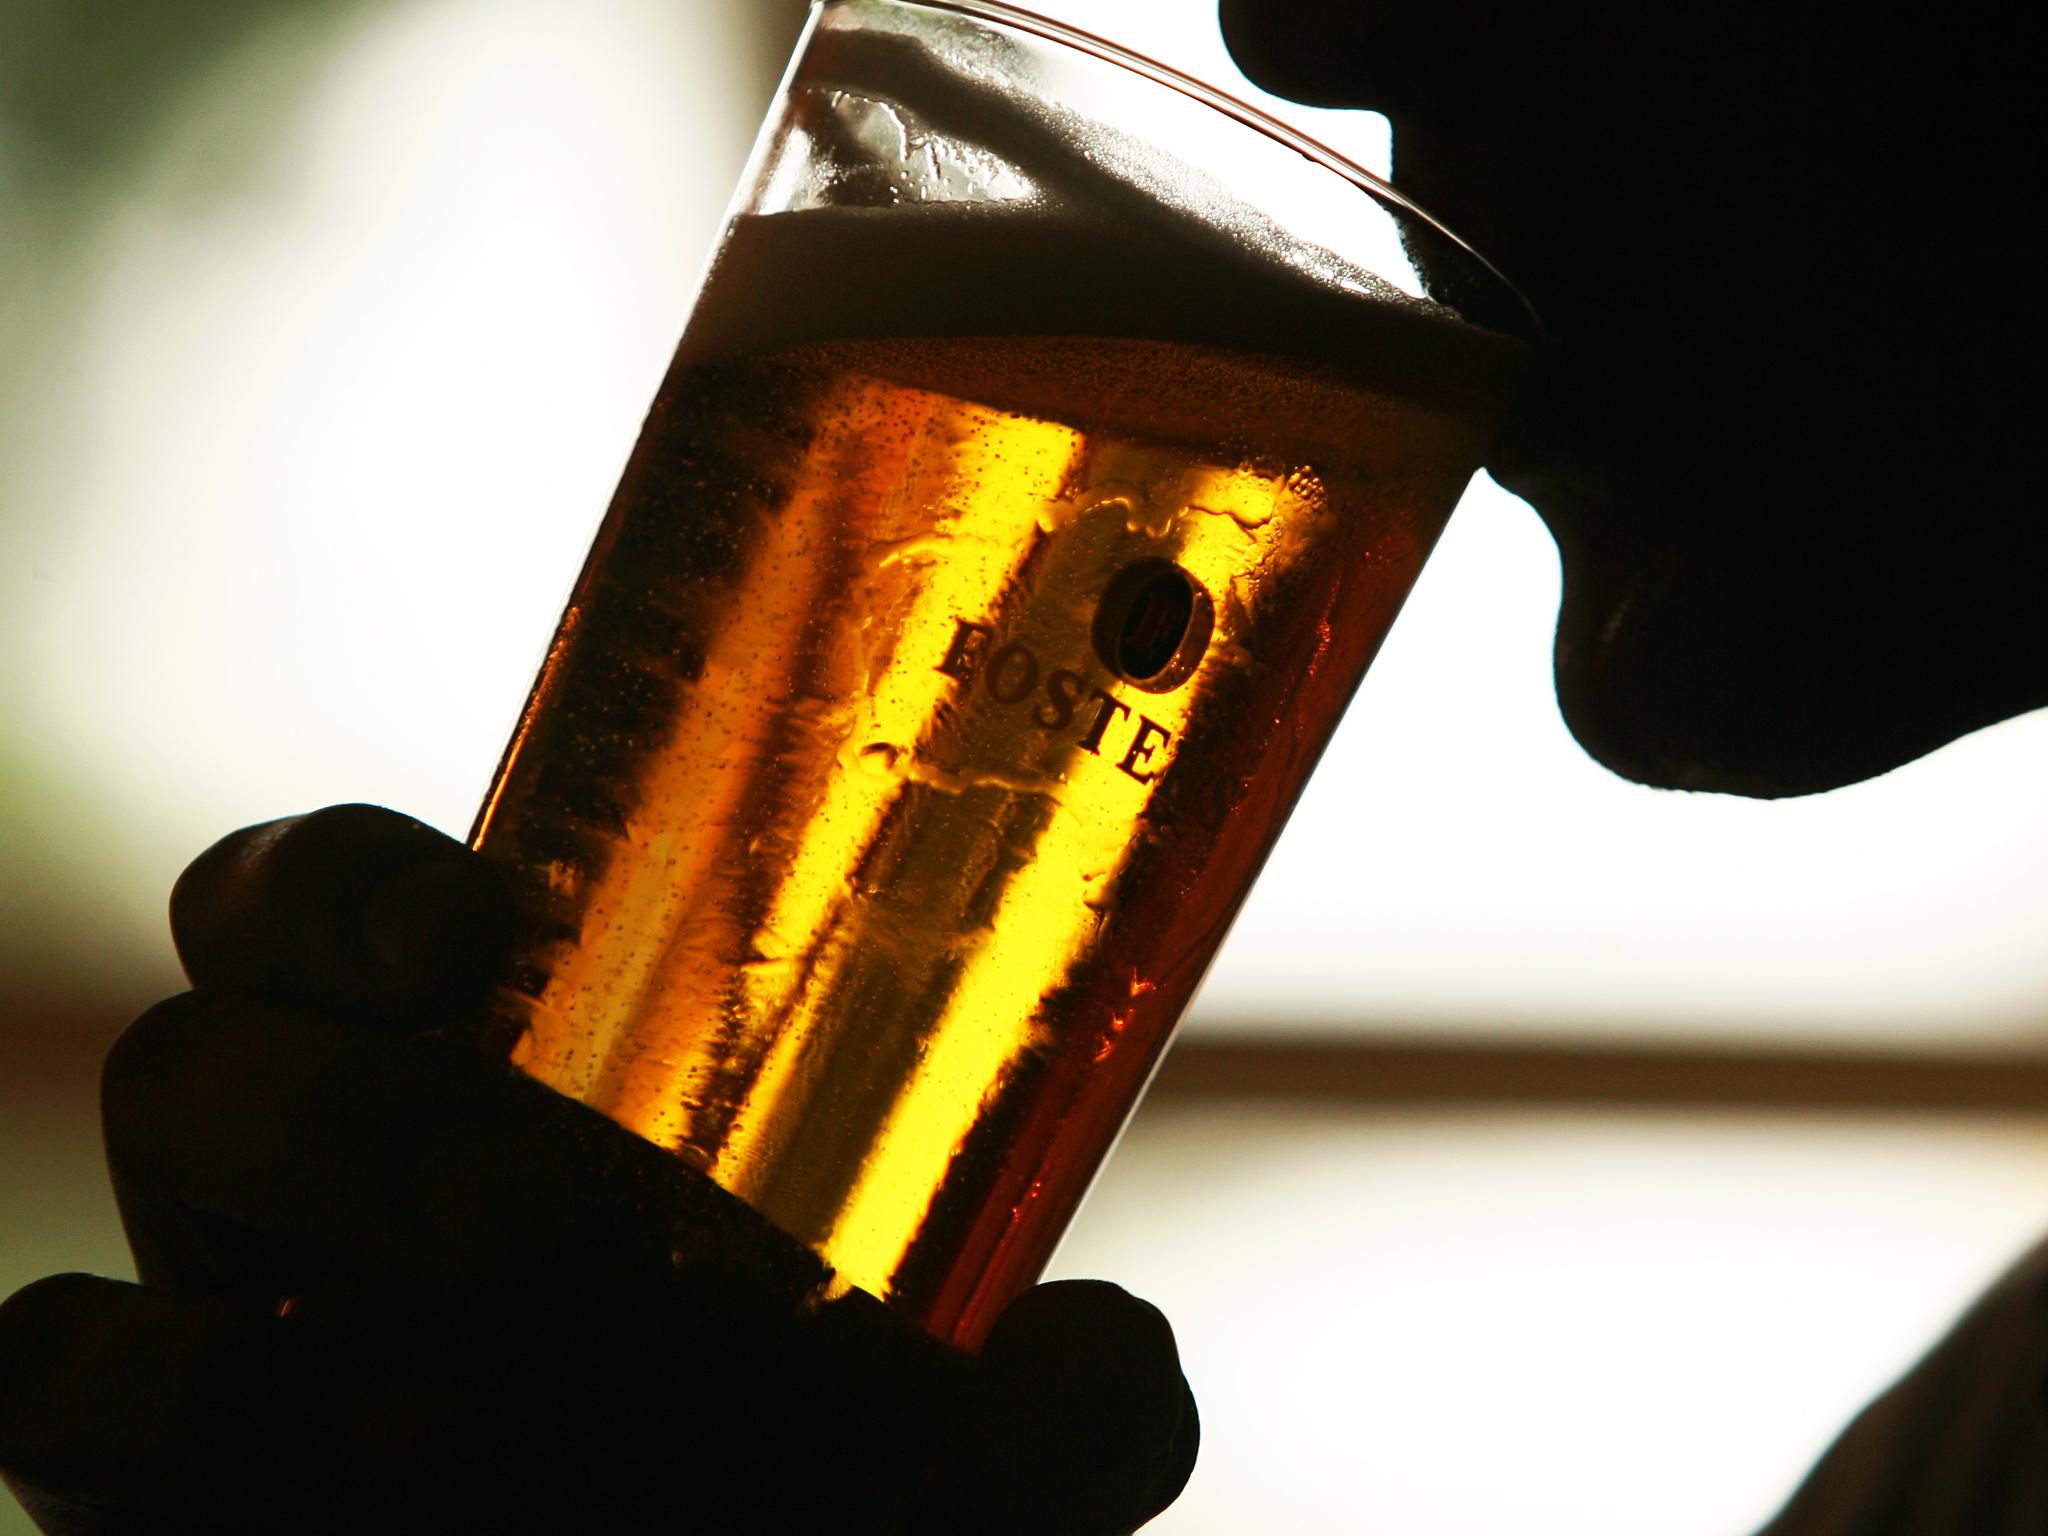 ΠΟΥ: Από το αλκοόλ ένας στους 20 θανάτους παγκοσμίως